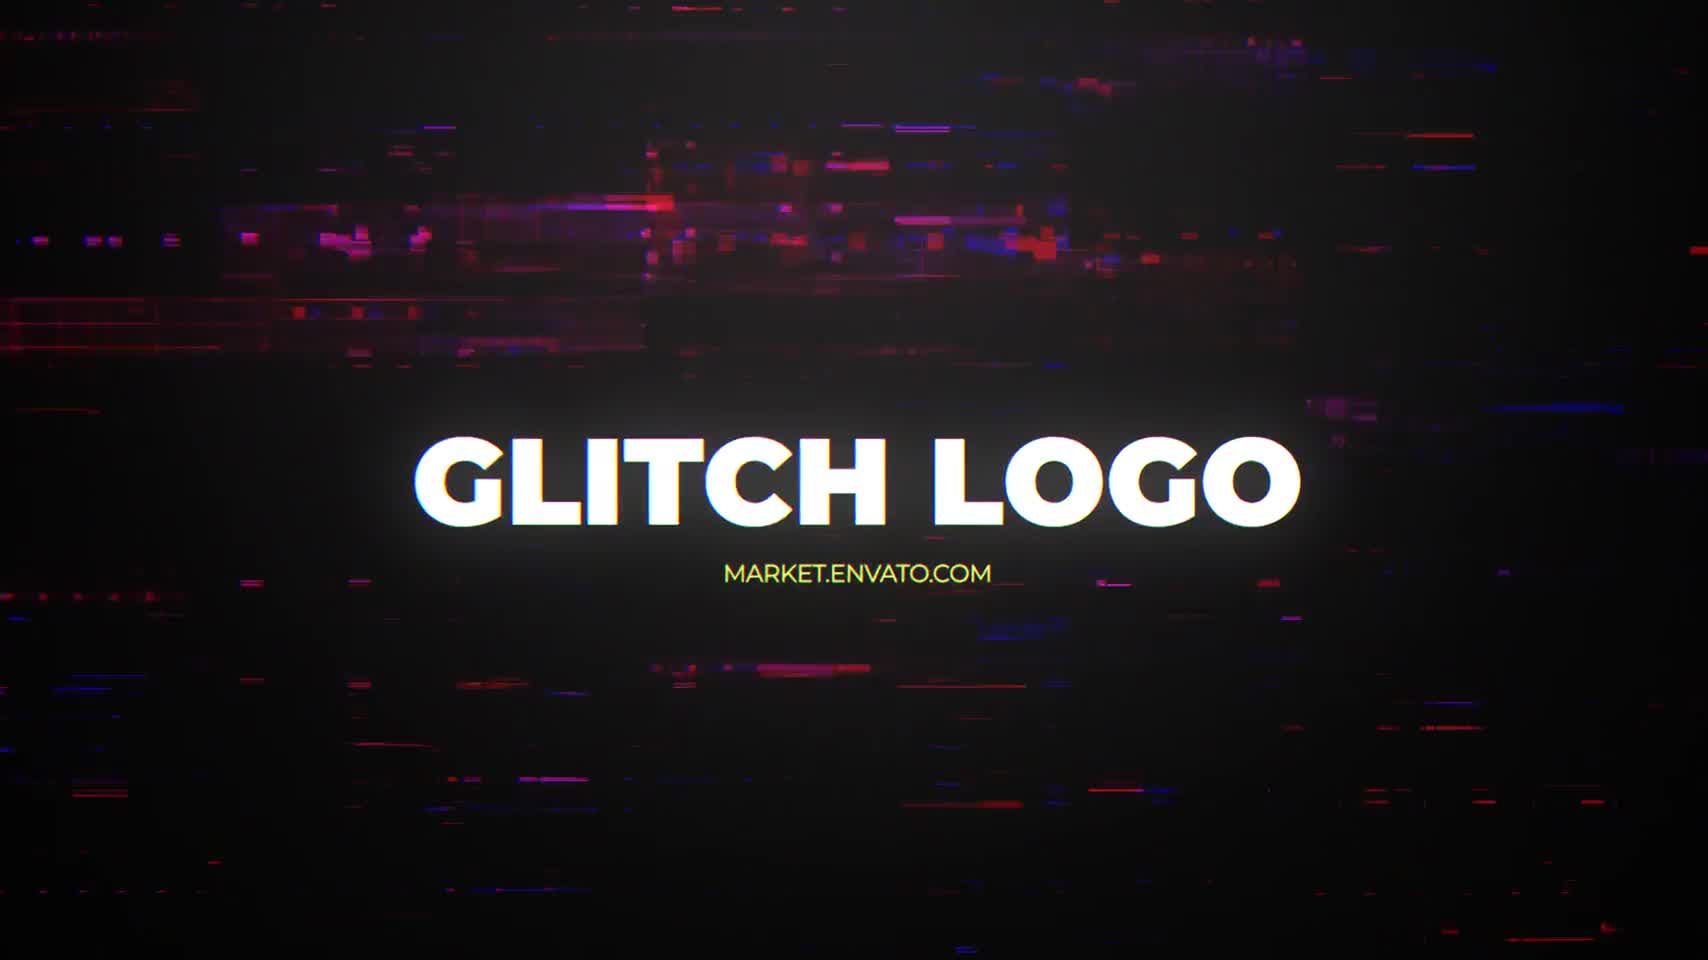 Glitch Logo Mogrt Videohive 24311897 Premiere Pro Image 8